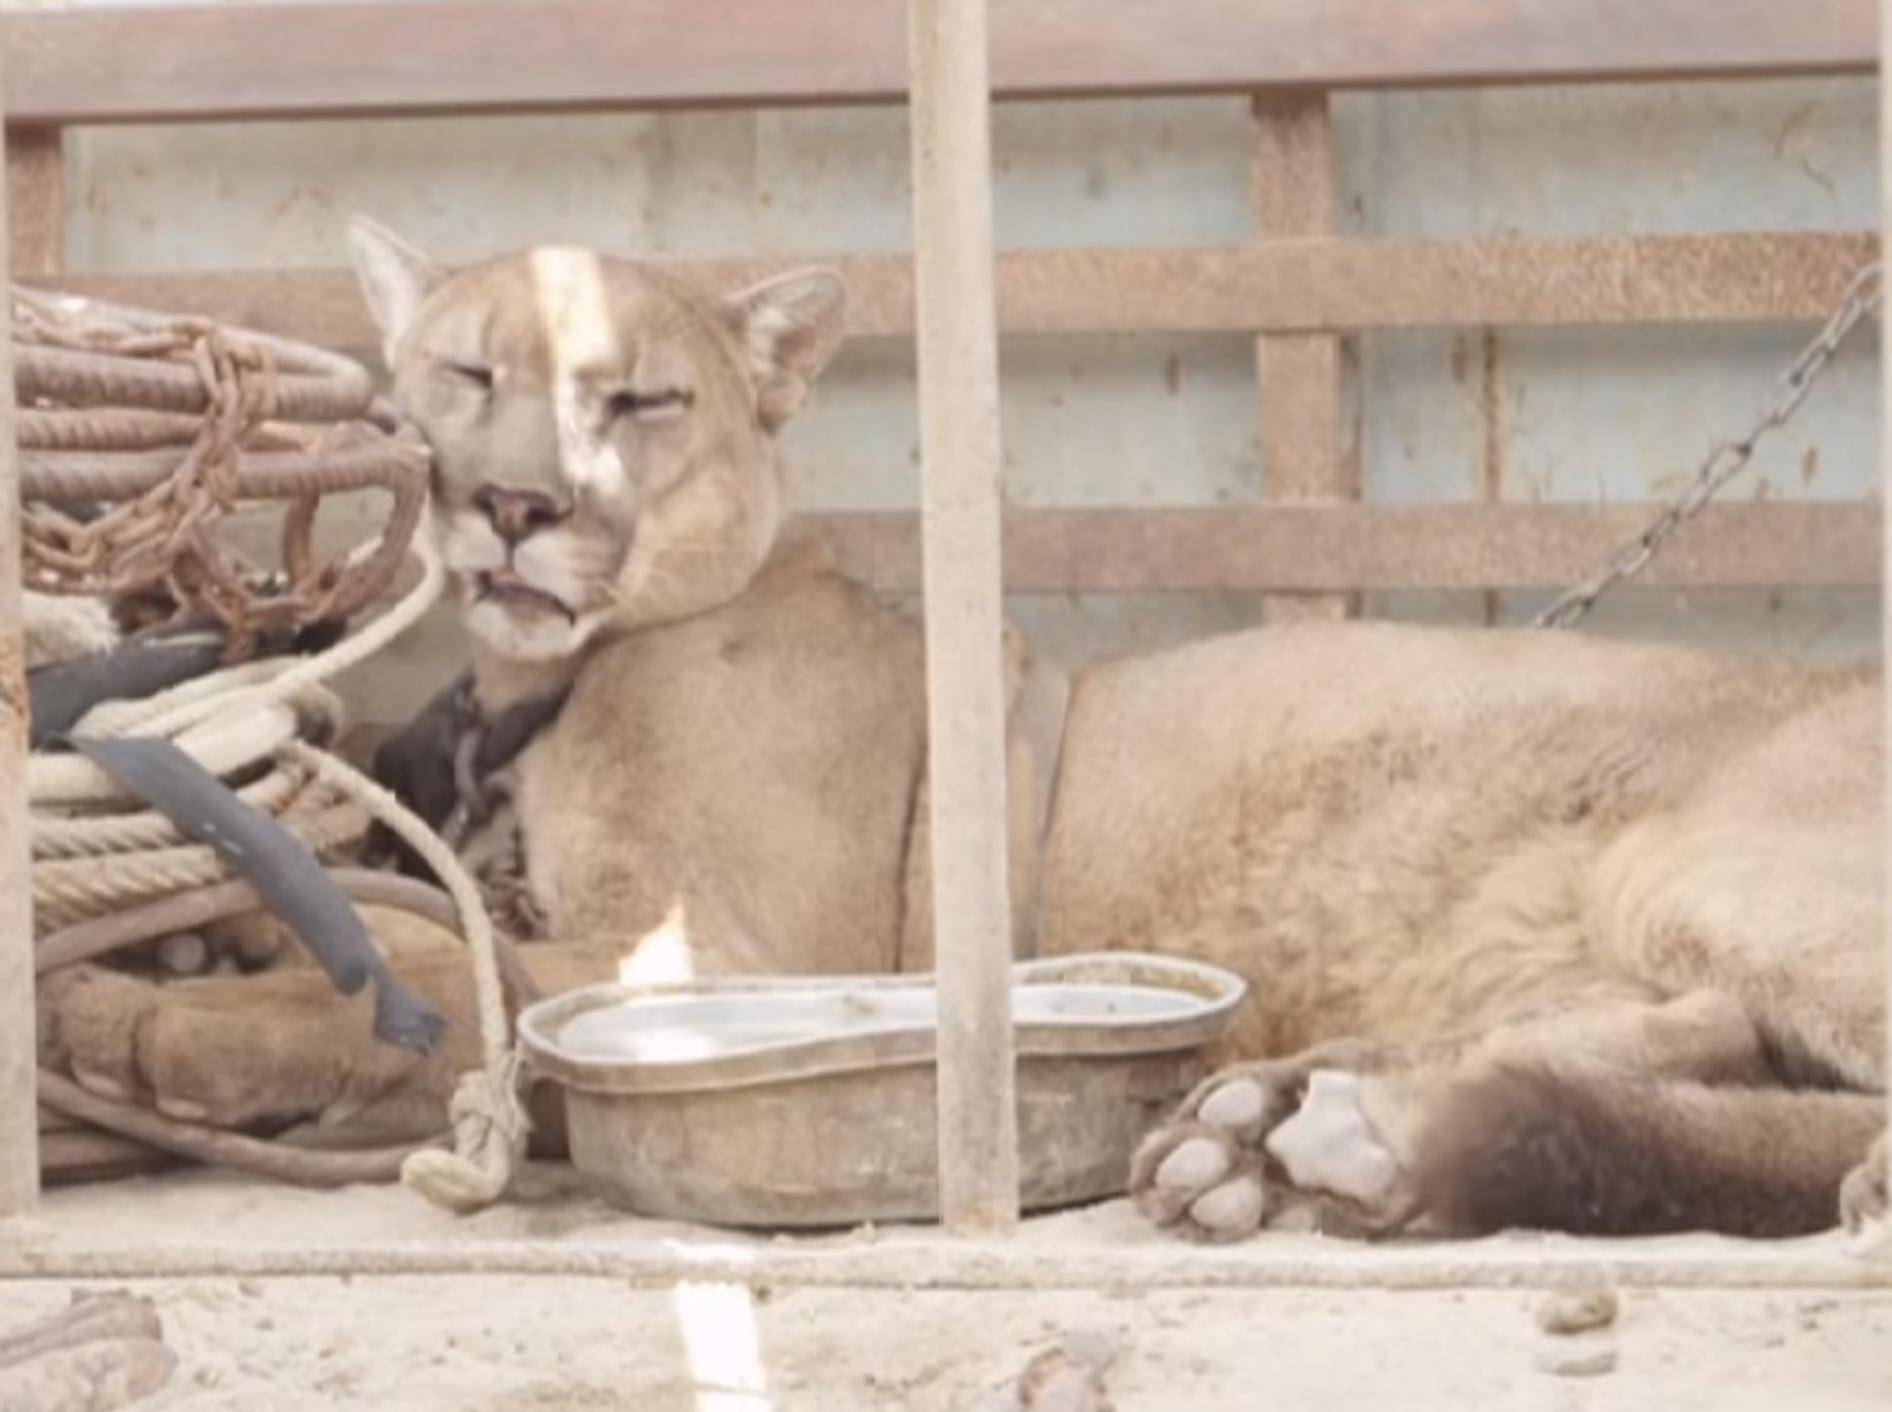 Puma Mufasa aus Gefangenschaft im Zirkus befreit – Youtube / Animal Defenders International